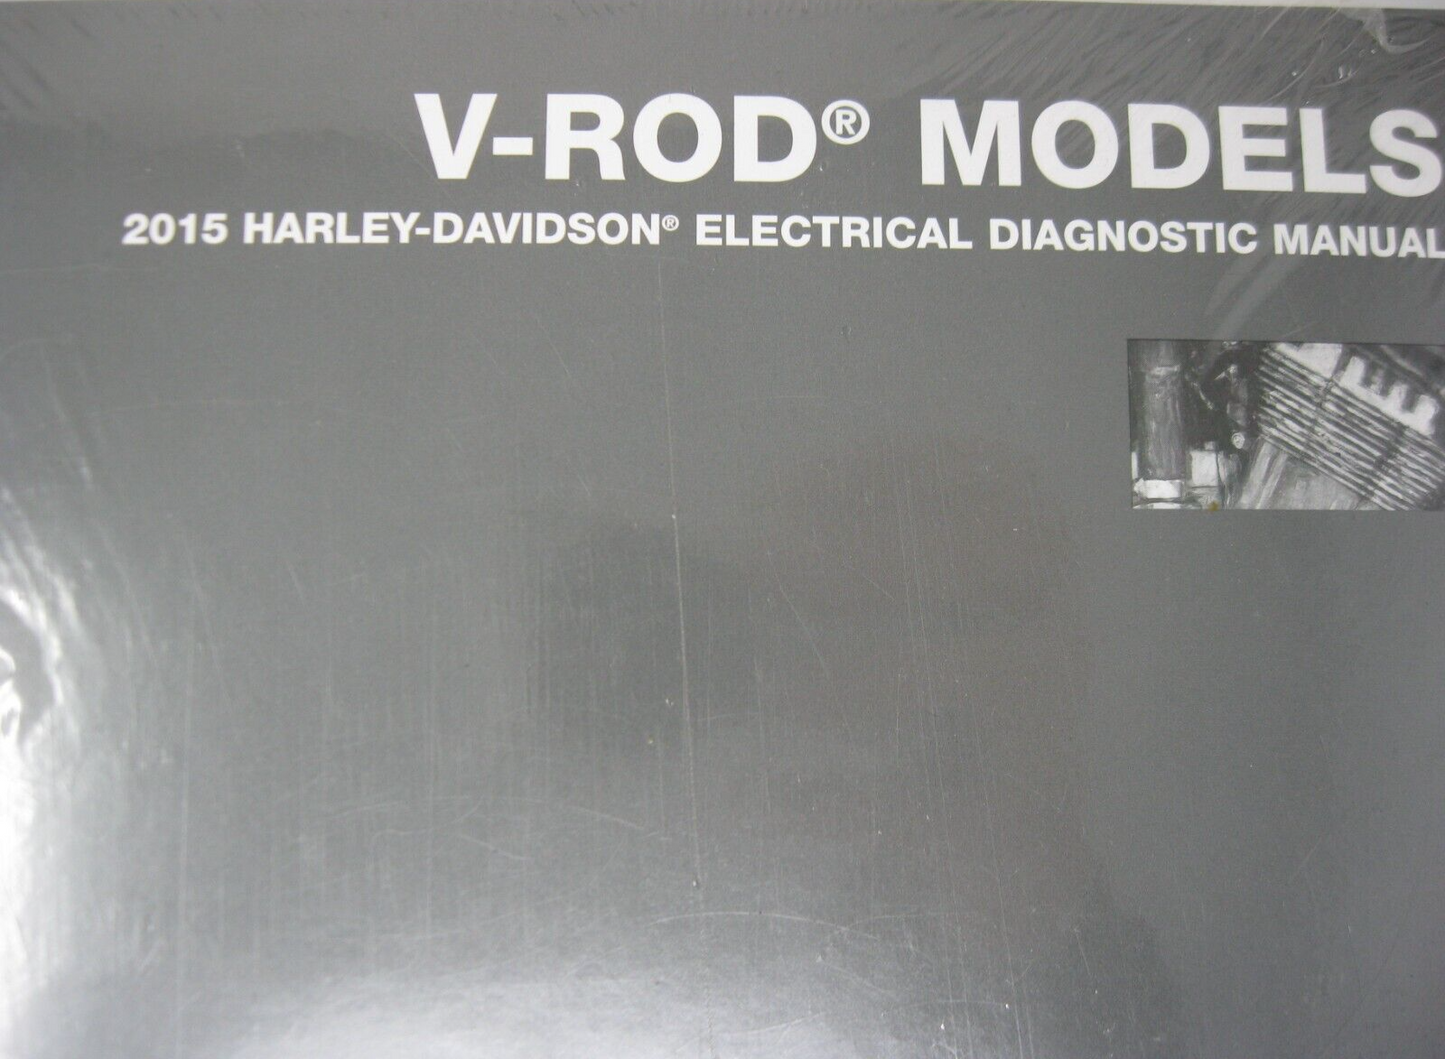 Harley-Davidson V-Rod Models 2015 Electrical Diagnostic Manual 99499-15